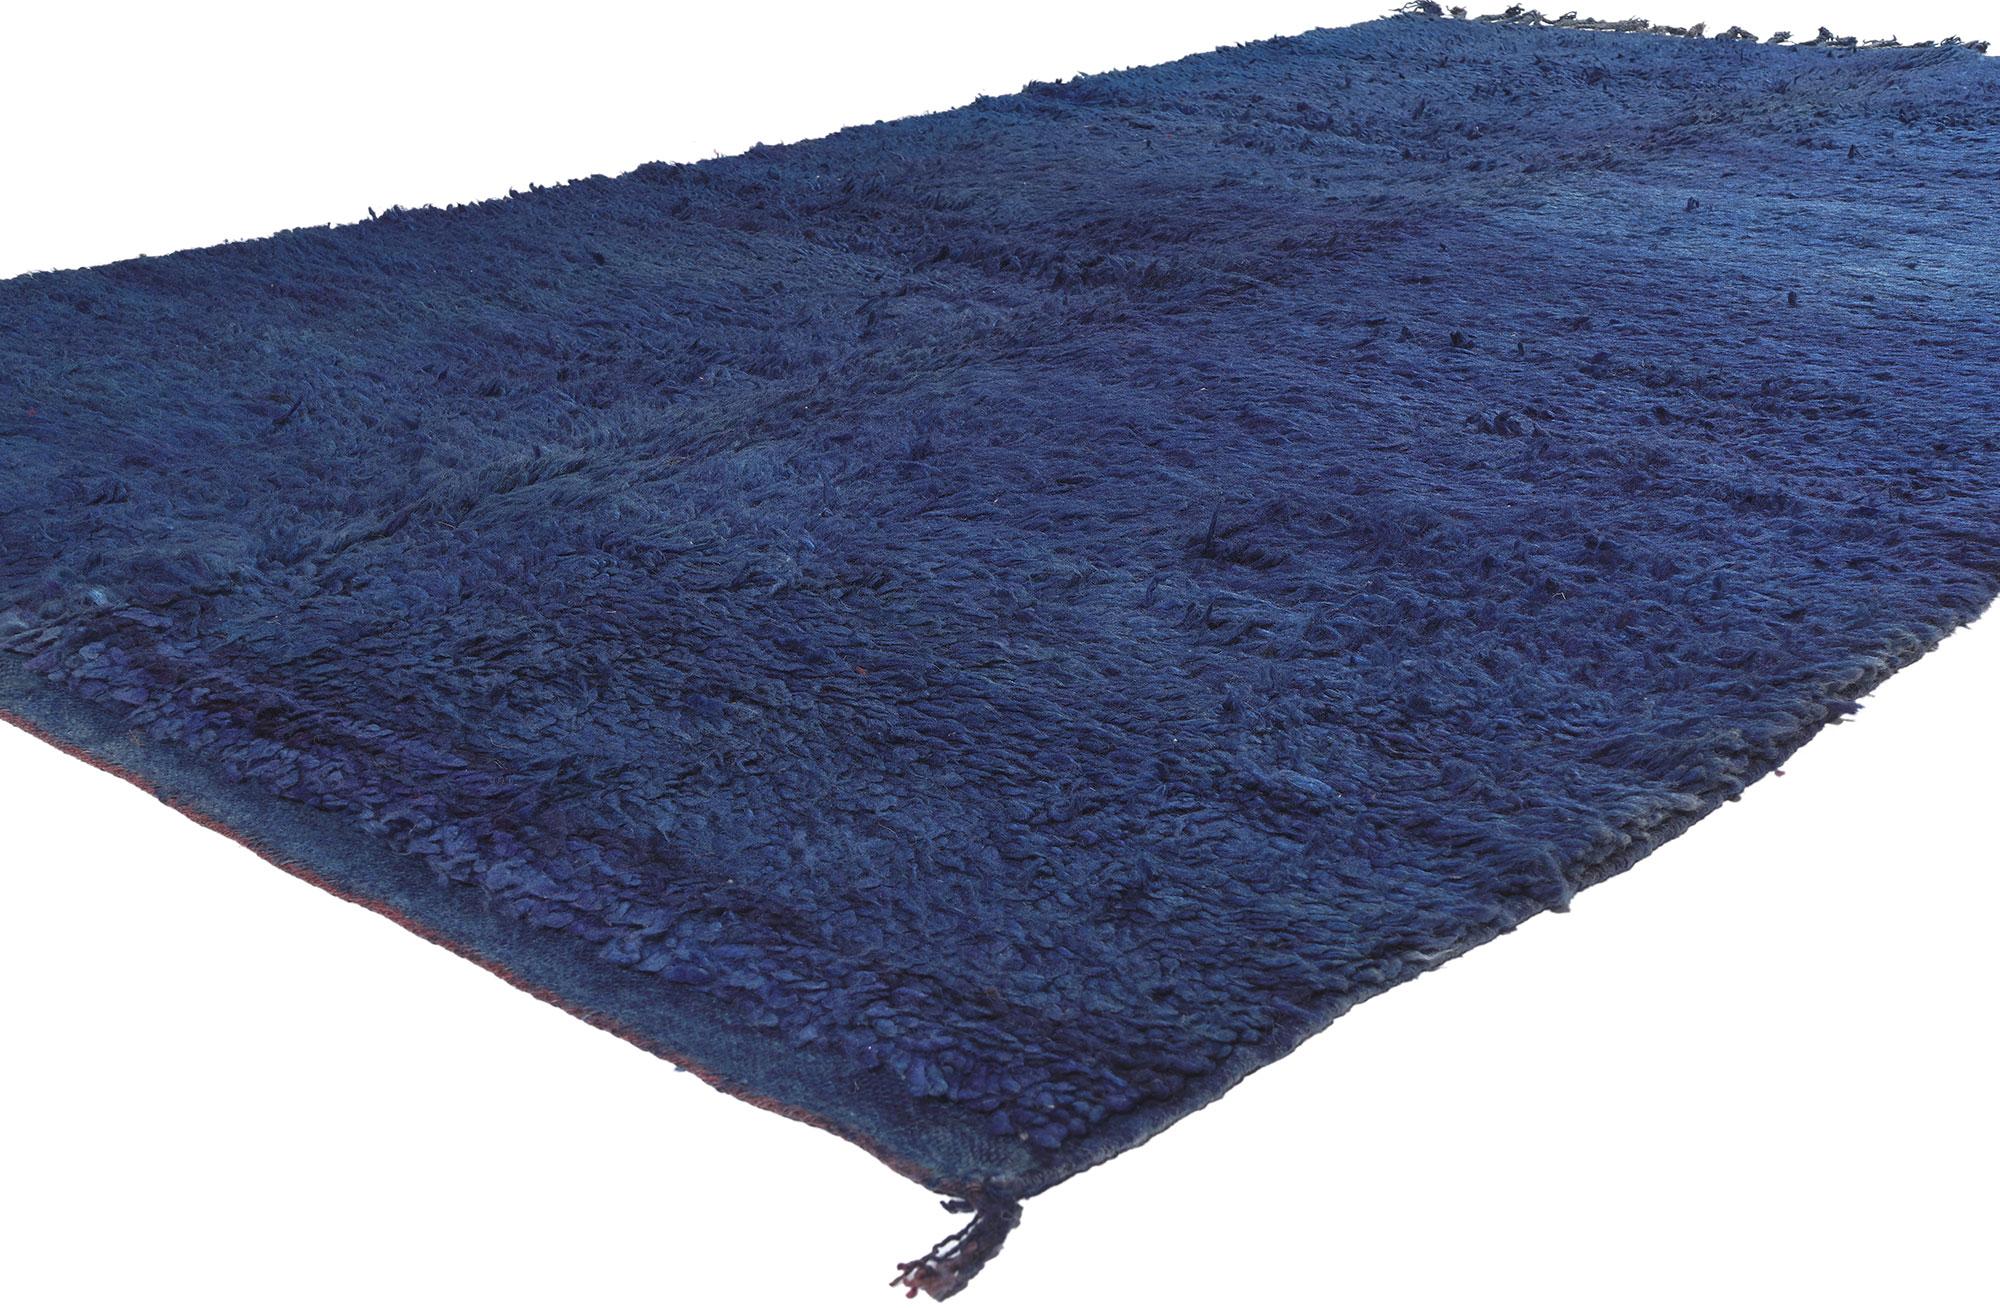 20645 Tapis marocain Beni MGuild bleu vintage, 05'10 x 10'04. Dans le domaine enchanteur de l'esthétique Shibui, découvrez l'attrait de ce tapis marocain Beni Rugs vintage en laine nouée à la main - un chef-d'œuvre du Moyen Atlas central occidental,